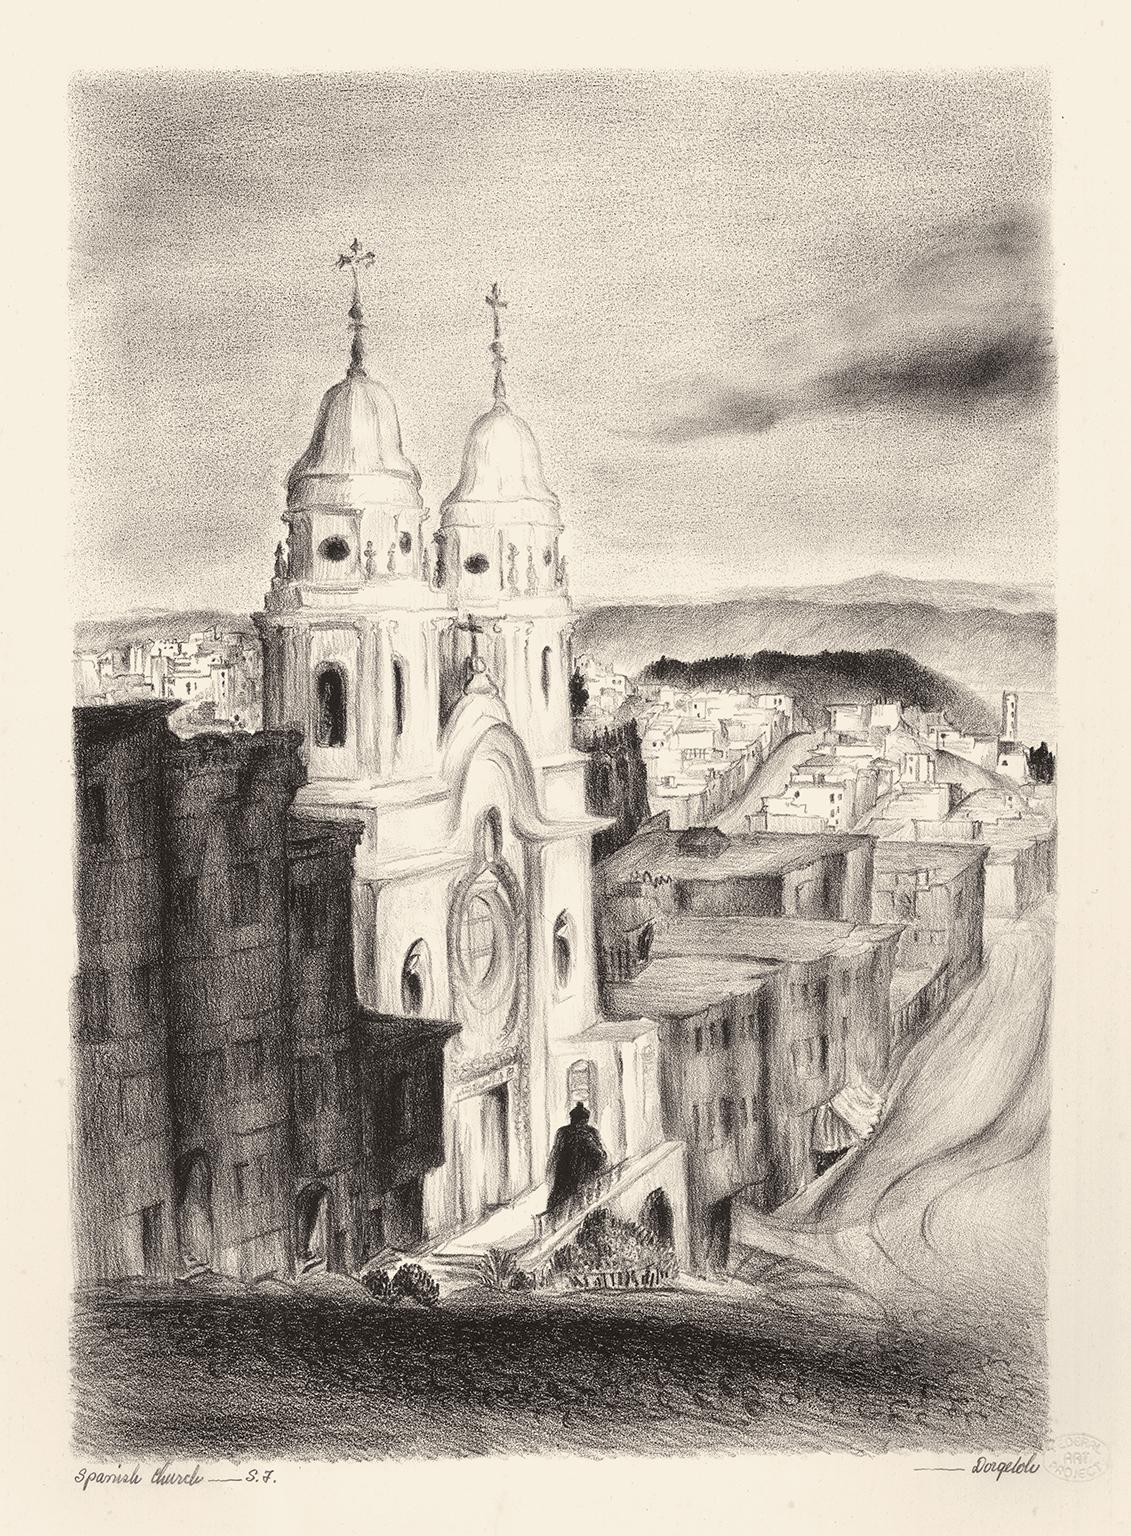 Marguerite Redman Dorgeloh Figurative Print – Spanische Kirche in Spanisch:: San Francisco